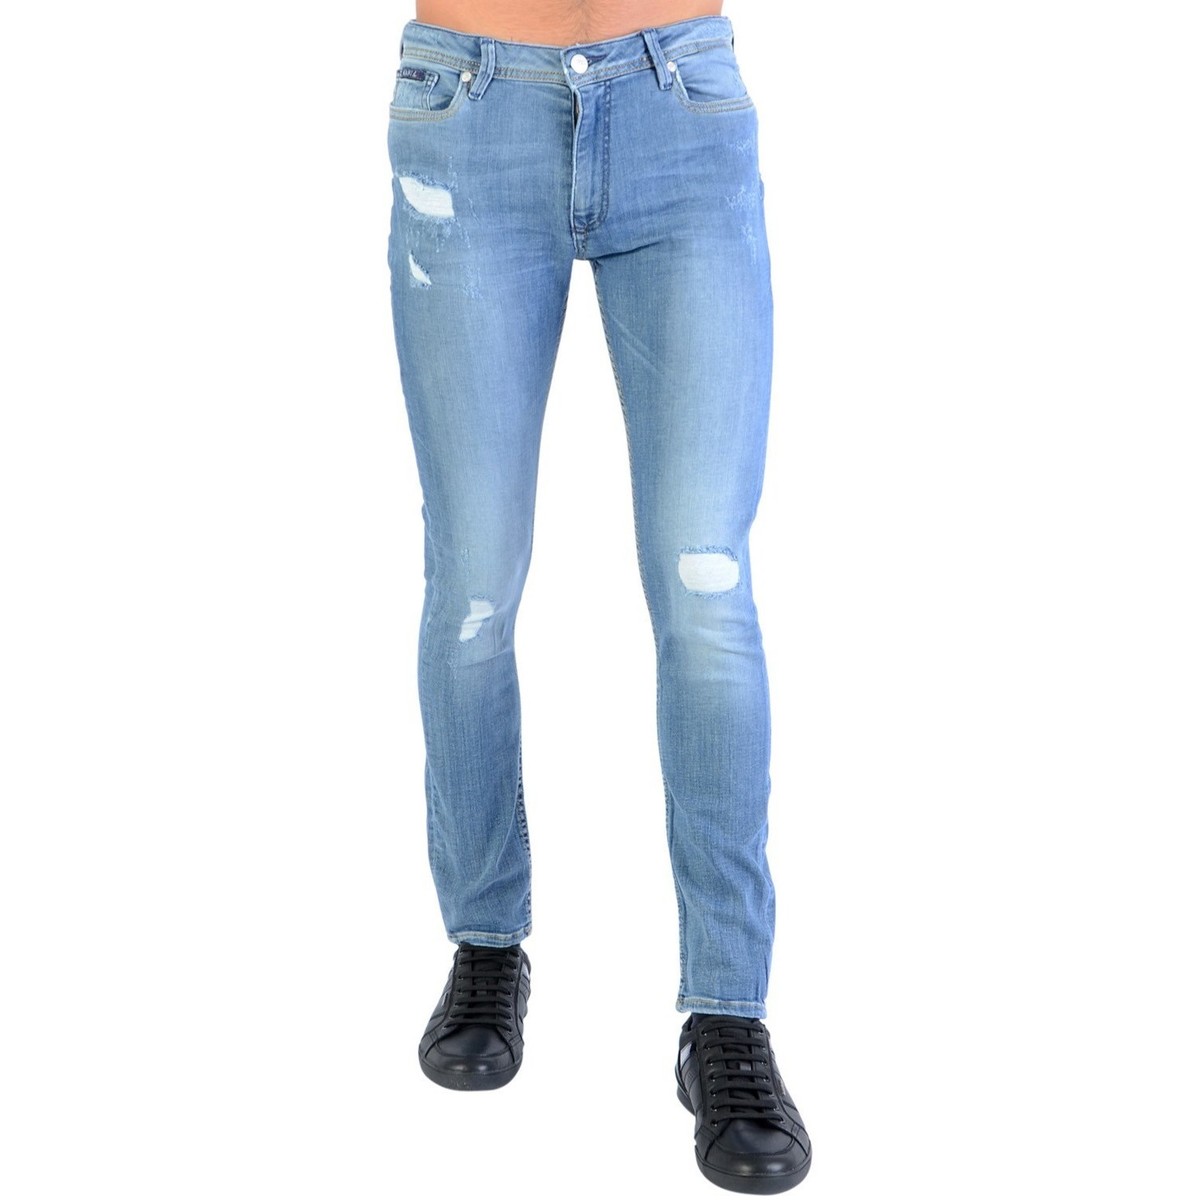 Kaporal Bleu Jeans Xilo 8puLe2T1